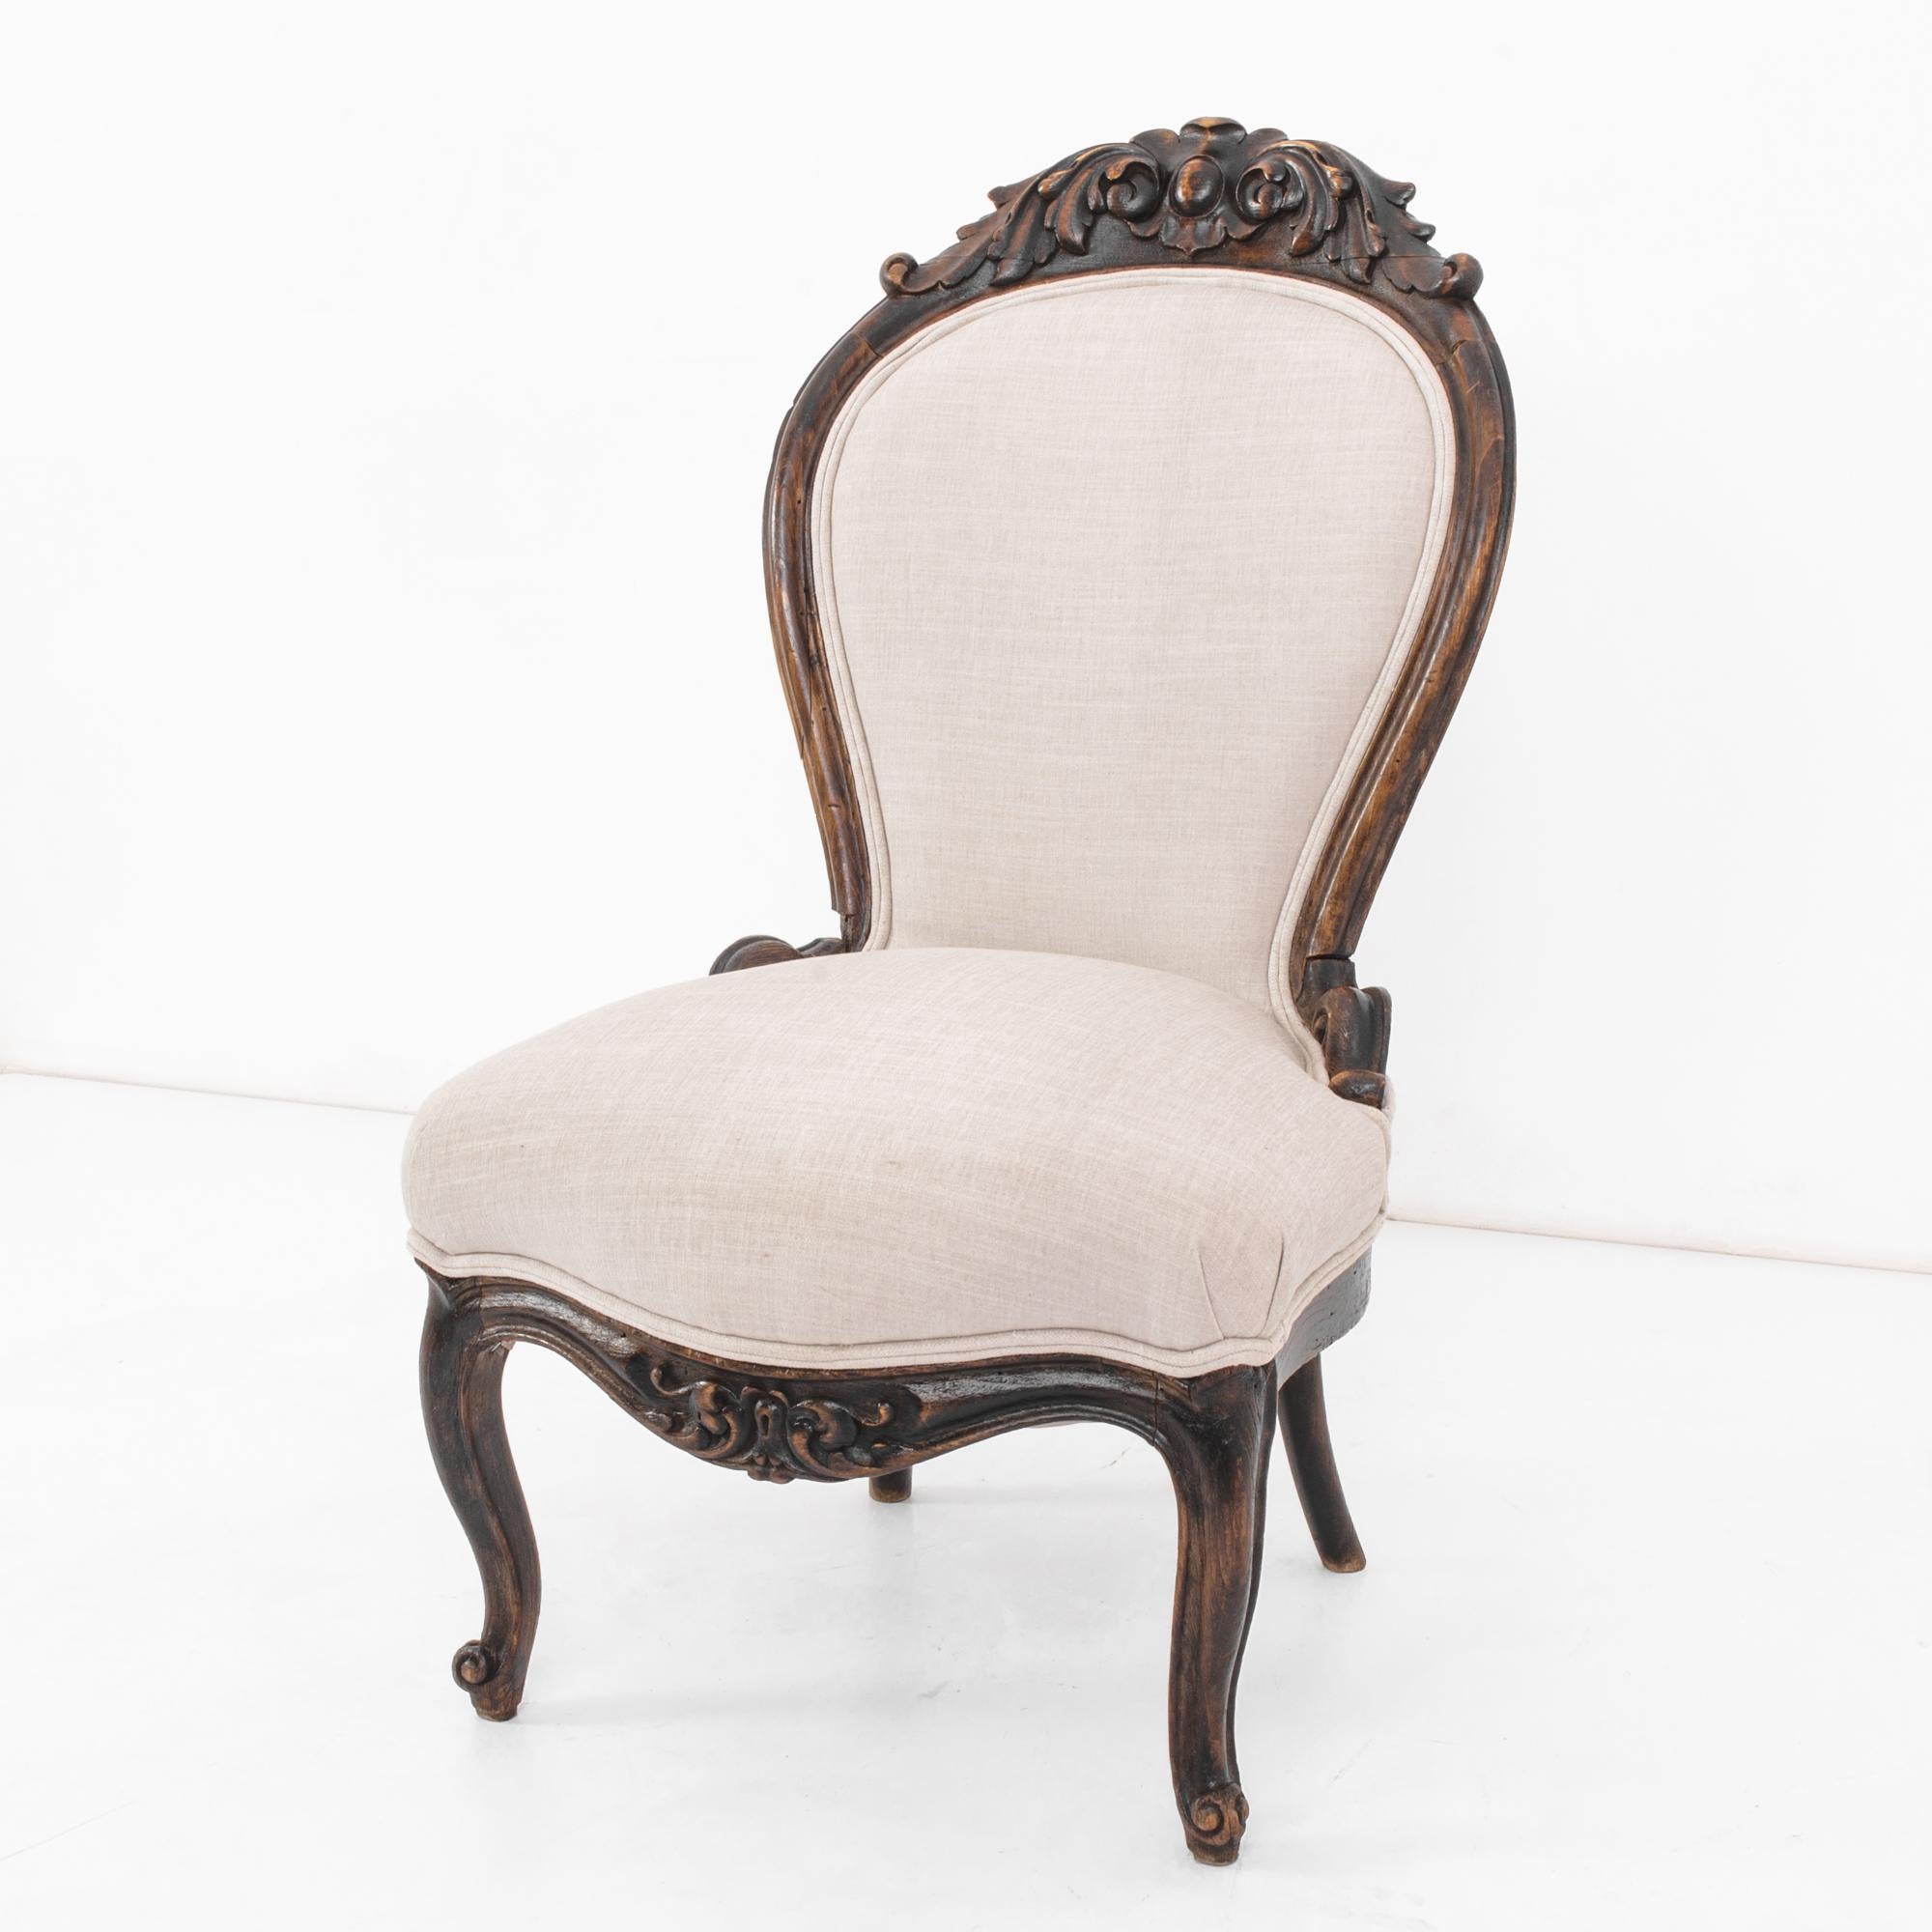 Laissez-vous séduire par l'élégance intemporelle de cette chaise en bois française des années 1880. Fabriqué avec un art exquis, le bois à la finition sombre présente des sculptures complexes qui ornent le magnifique tablier et la pièce sculptée